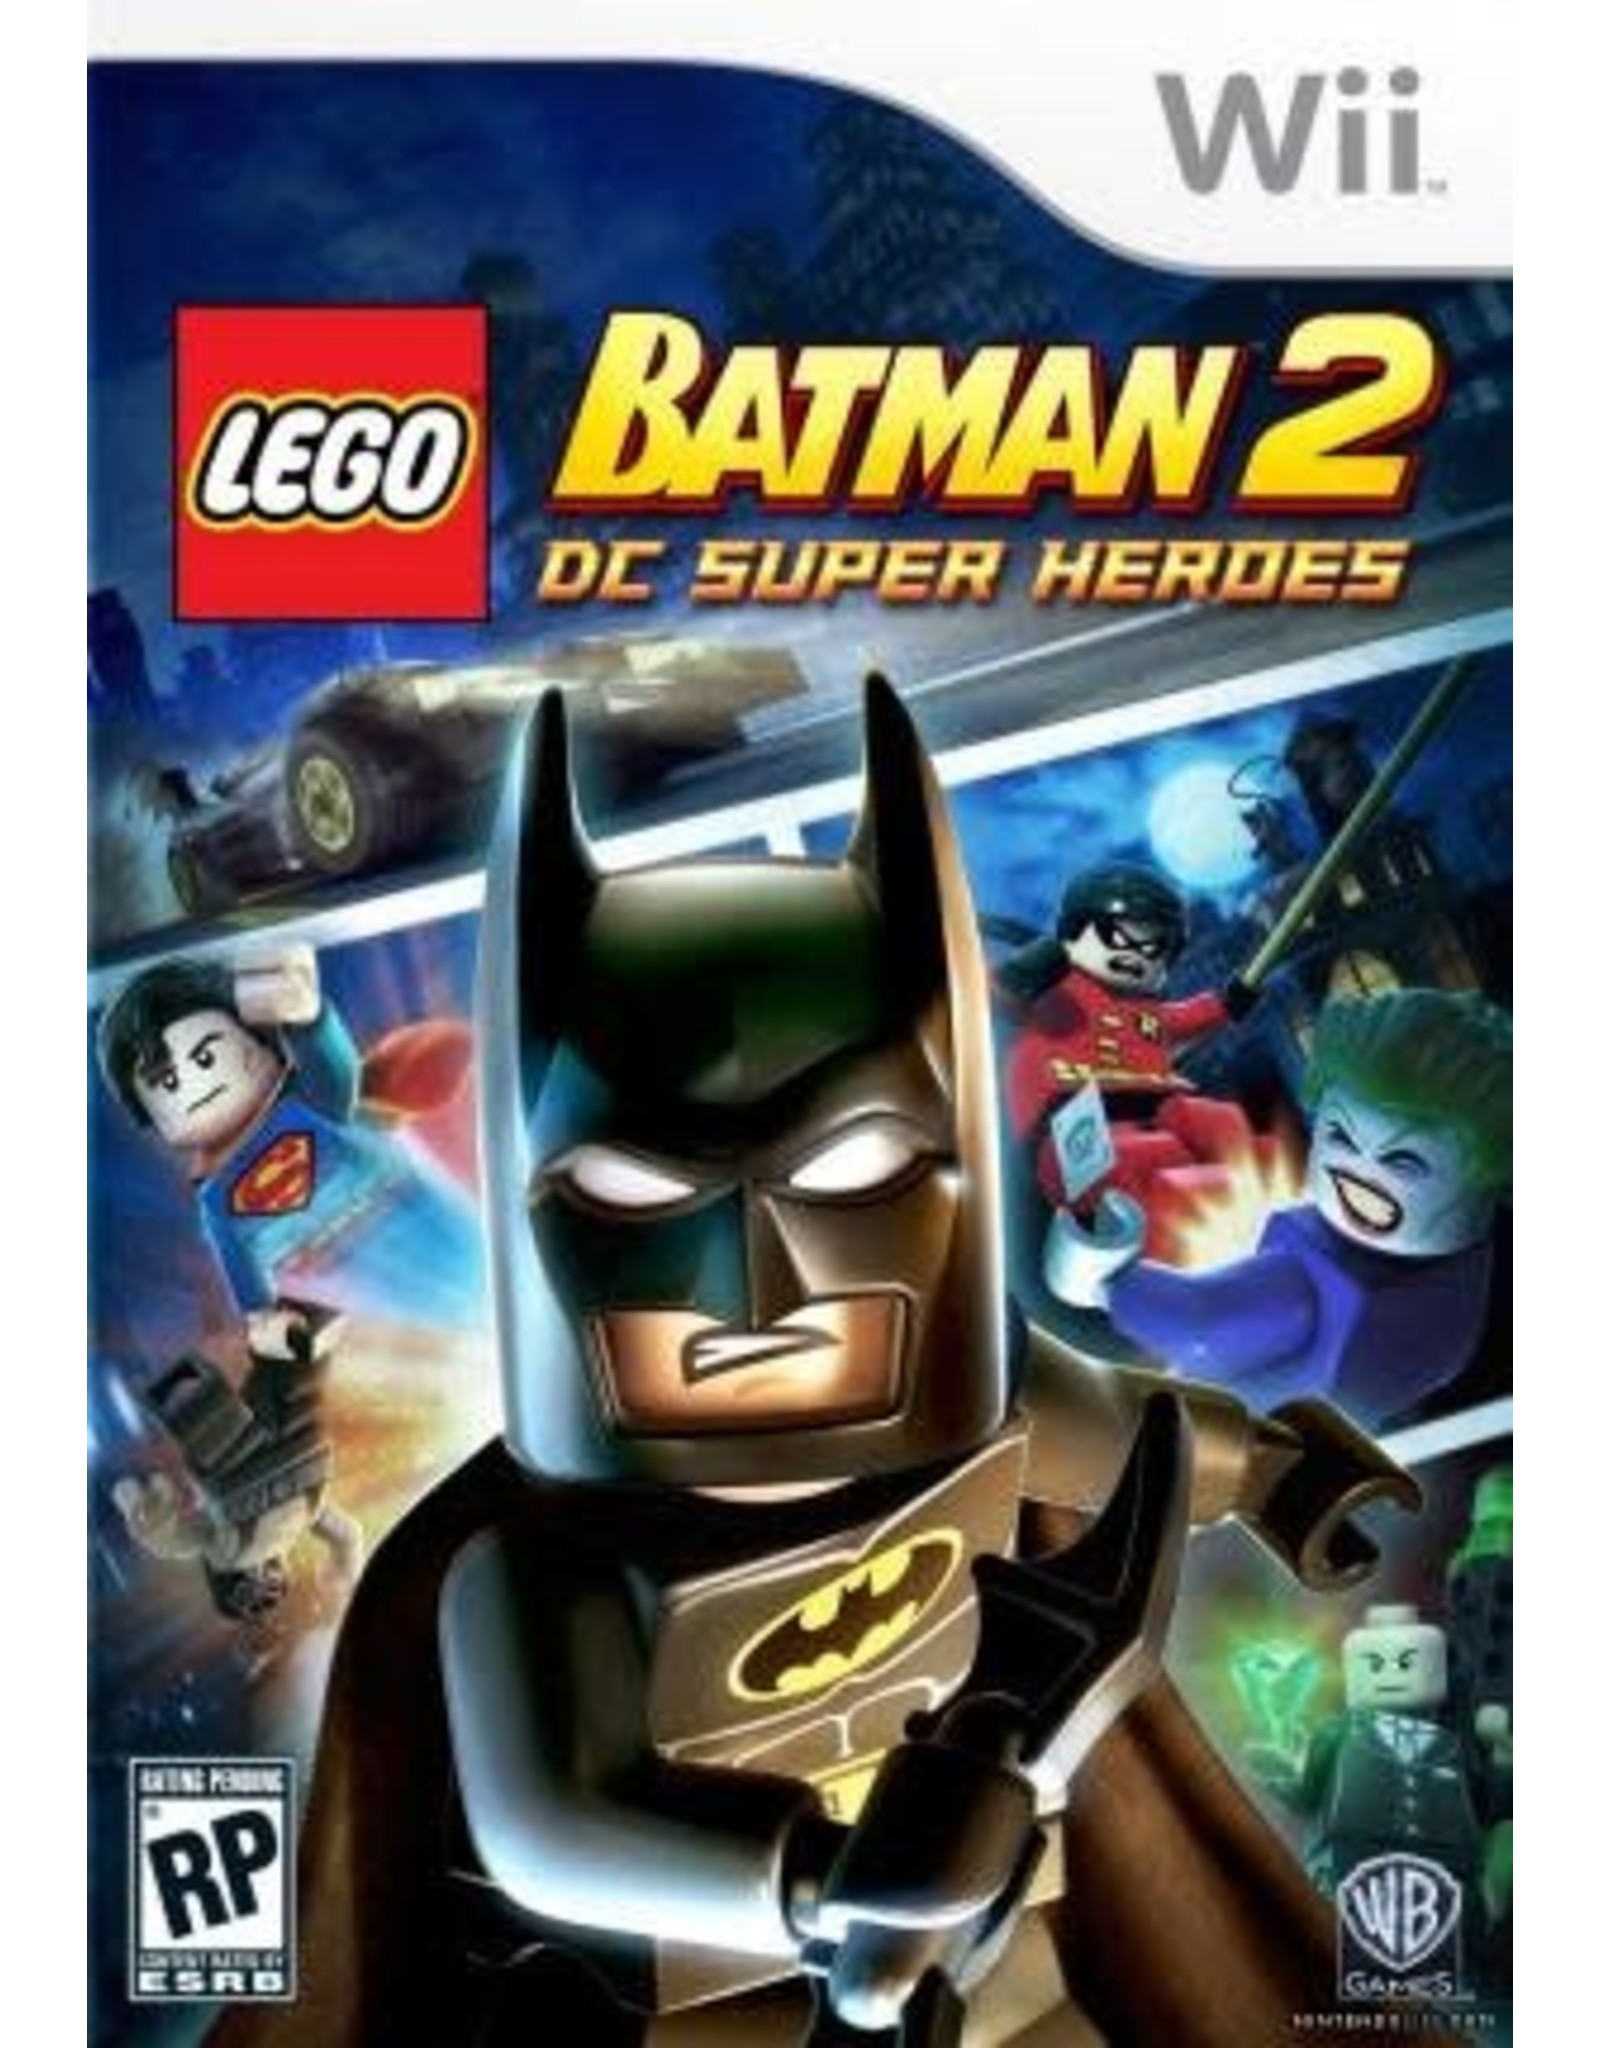 Wii LEGO Batman 2 (Used)